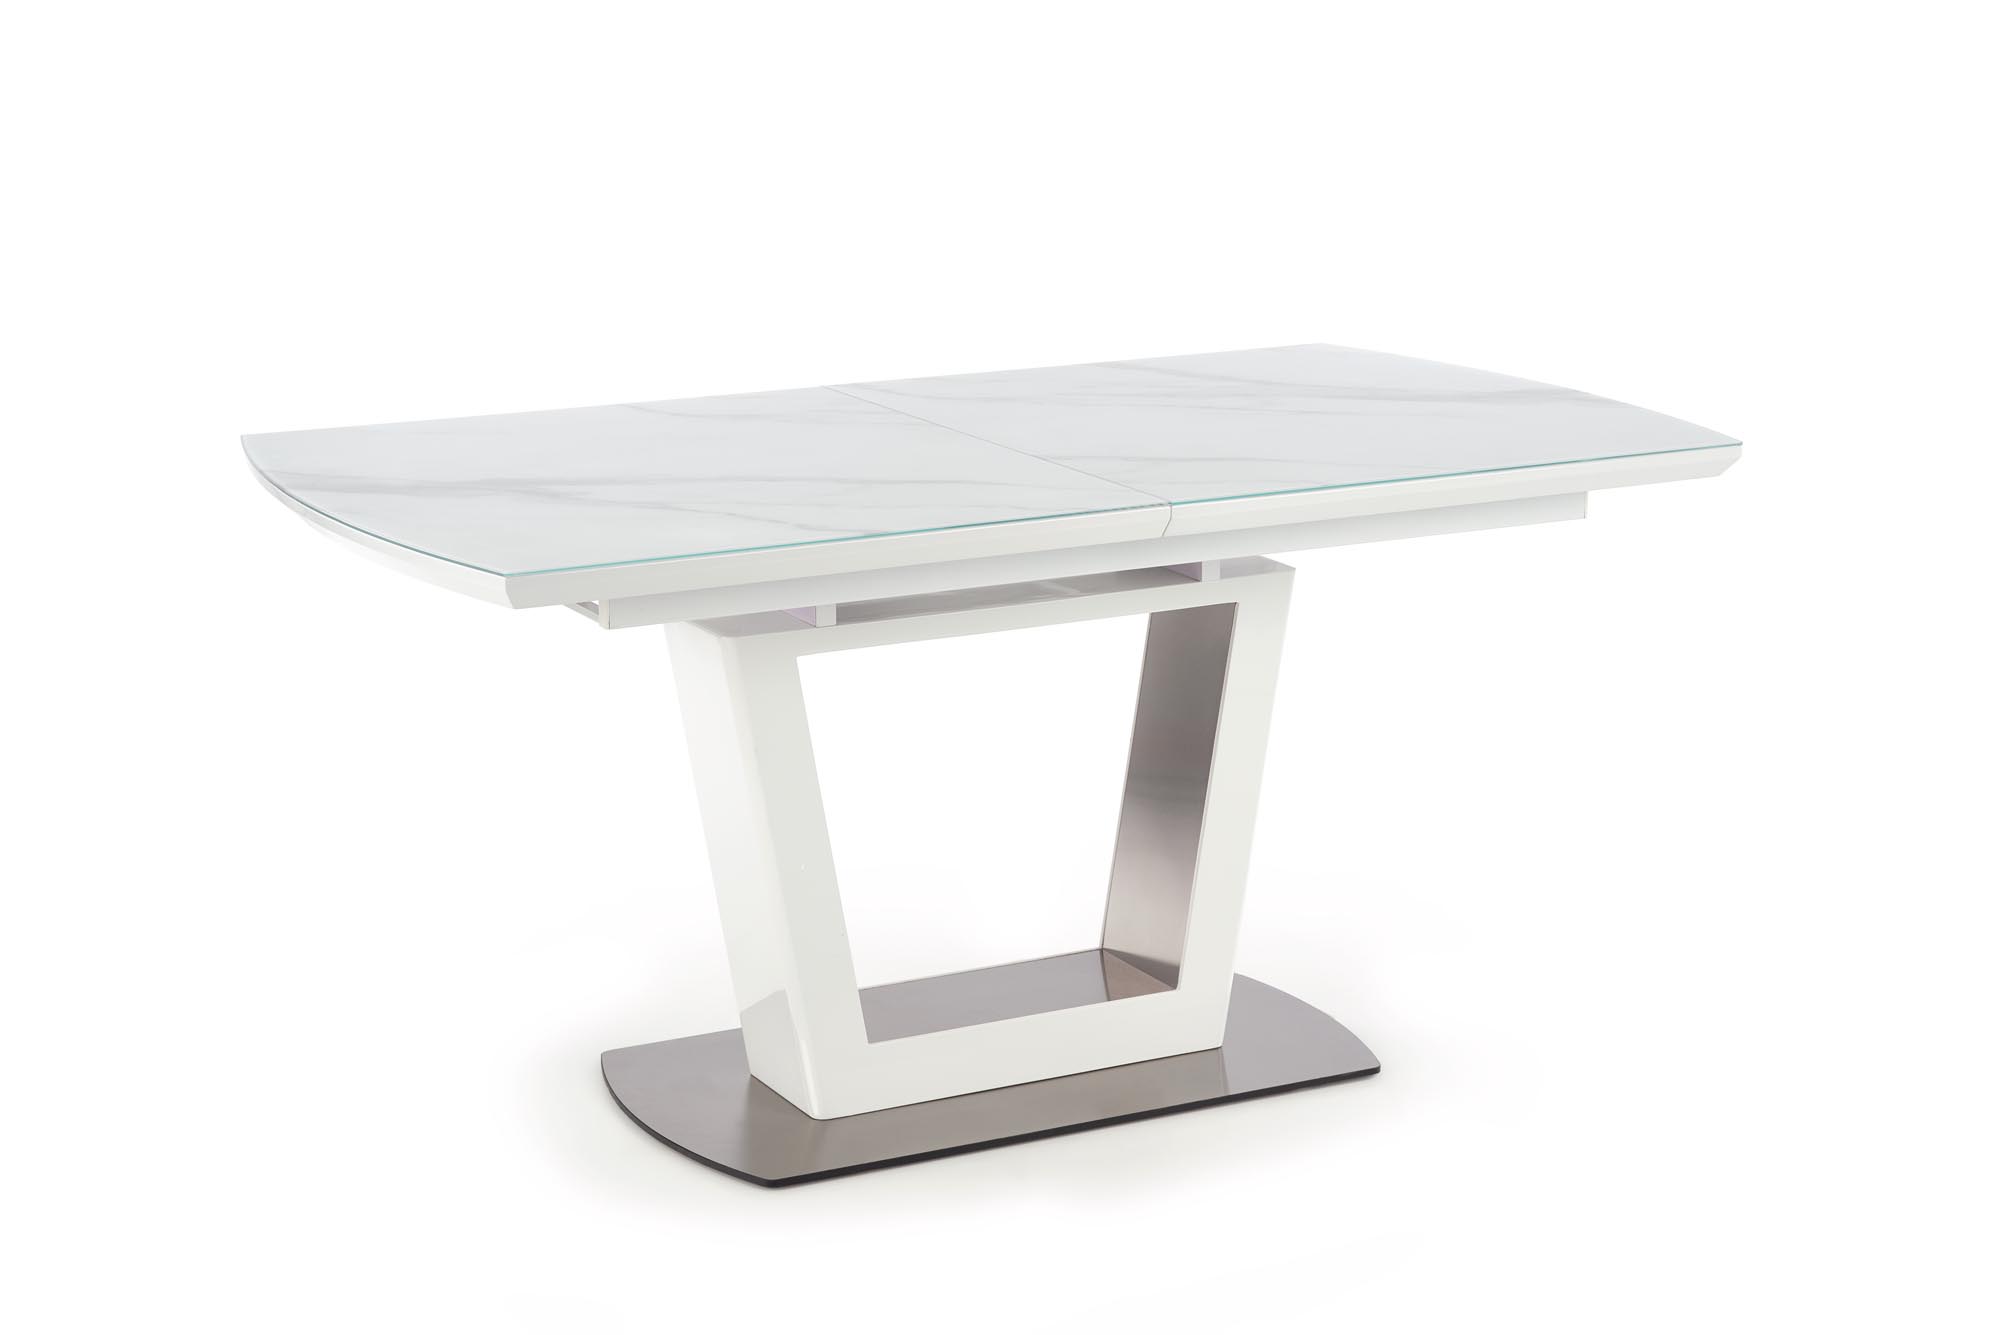 BLANCO Stůl rozkládací Deska - Bílý mramor / Bílý, noha - Bílý blanco stůl rozkládací Deska - Bílý mramor / Bílý, noha - Bílý